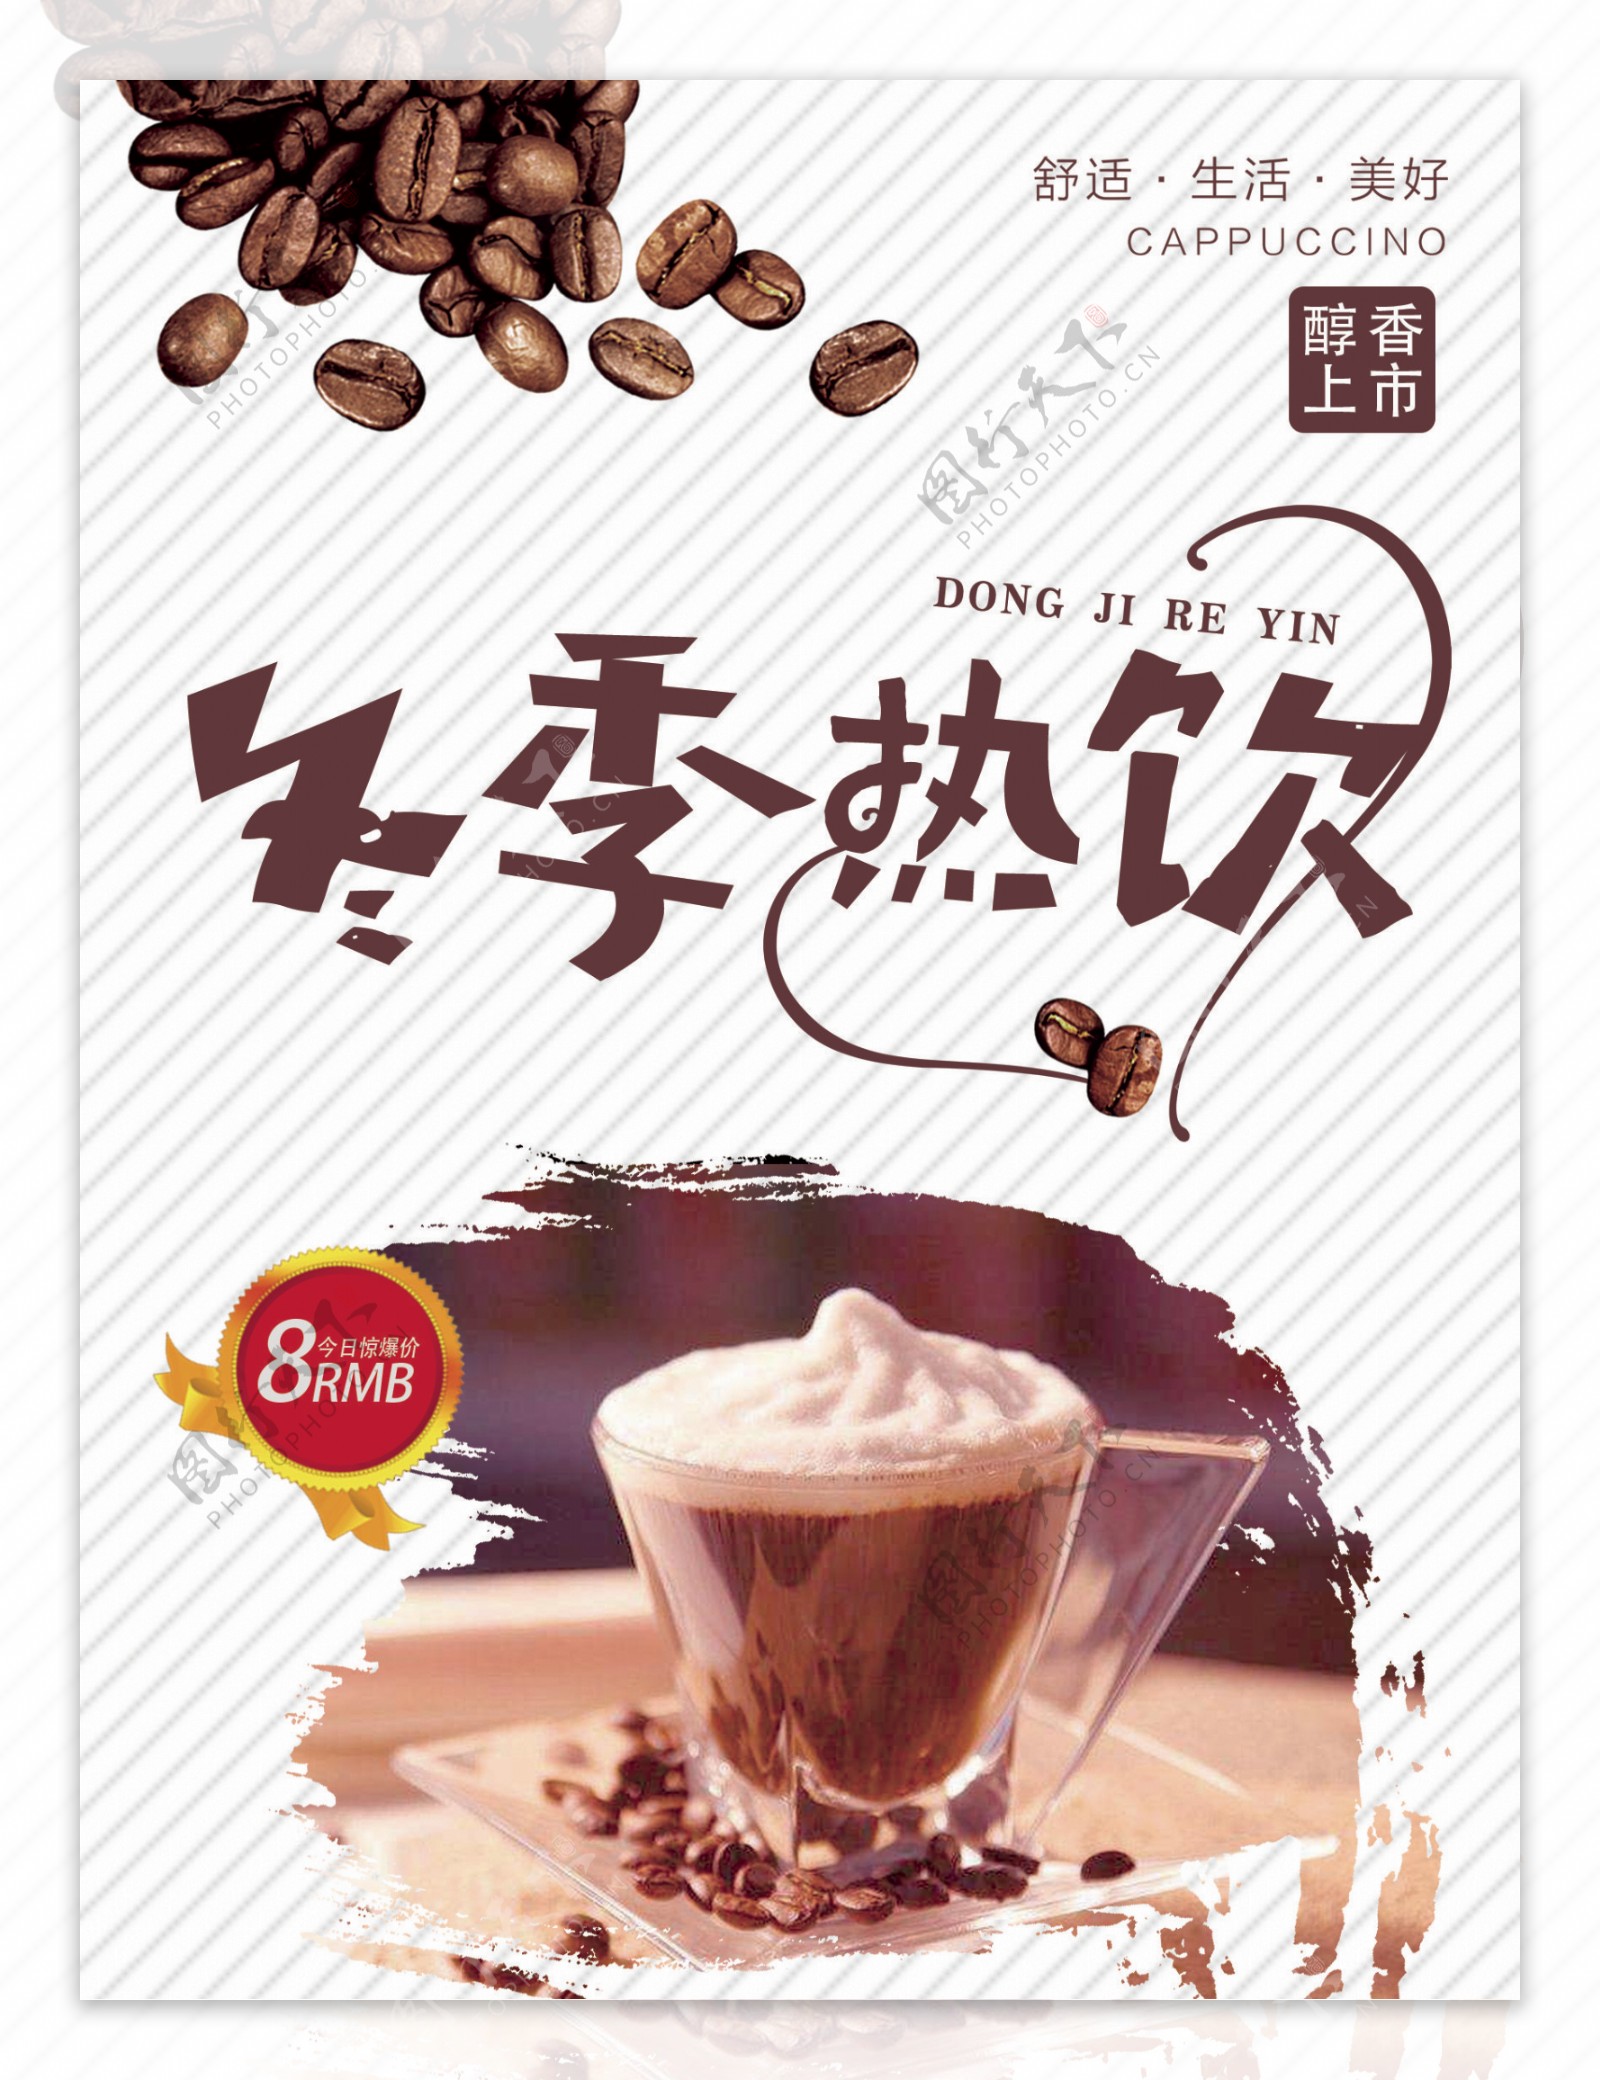 简约风格咖啡冬季热饮宣传海报